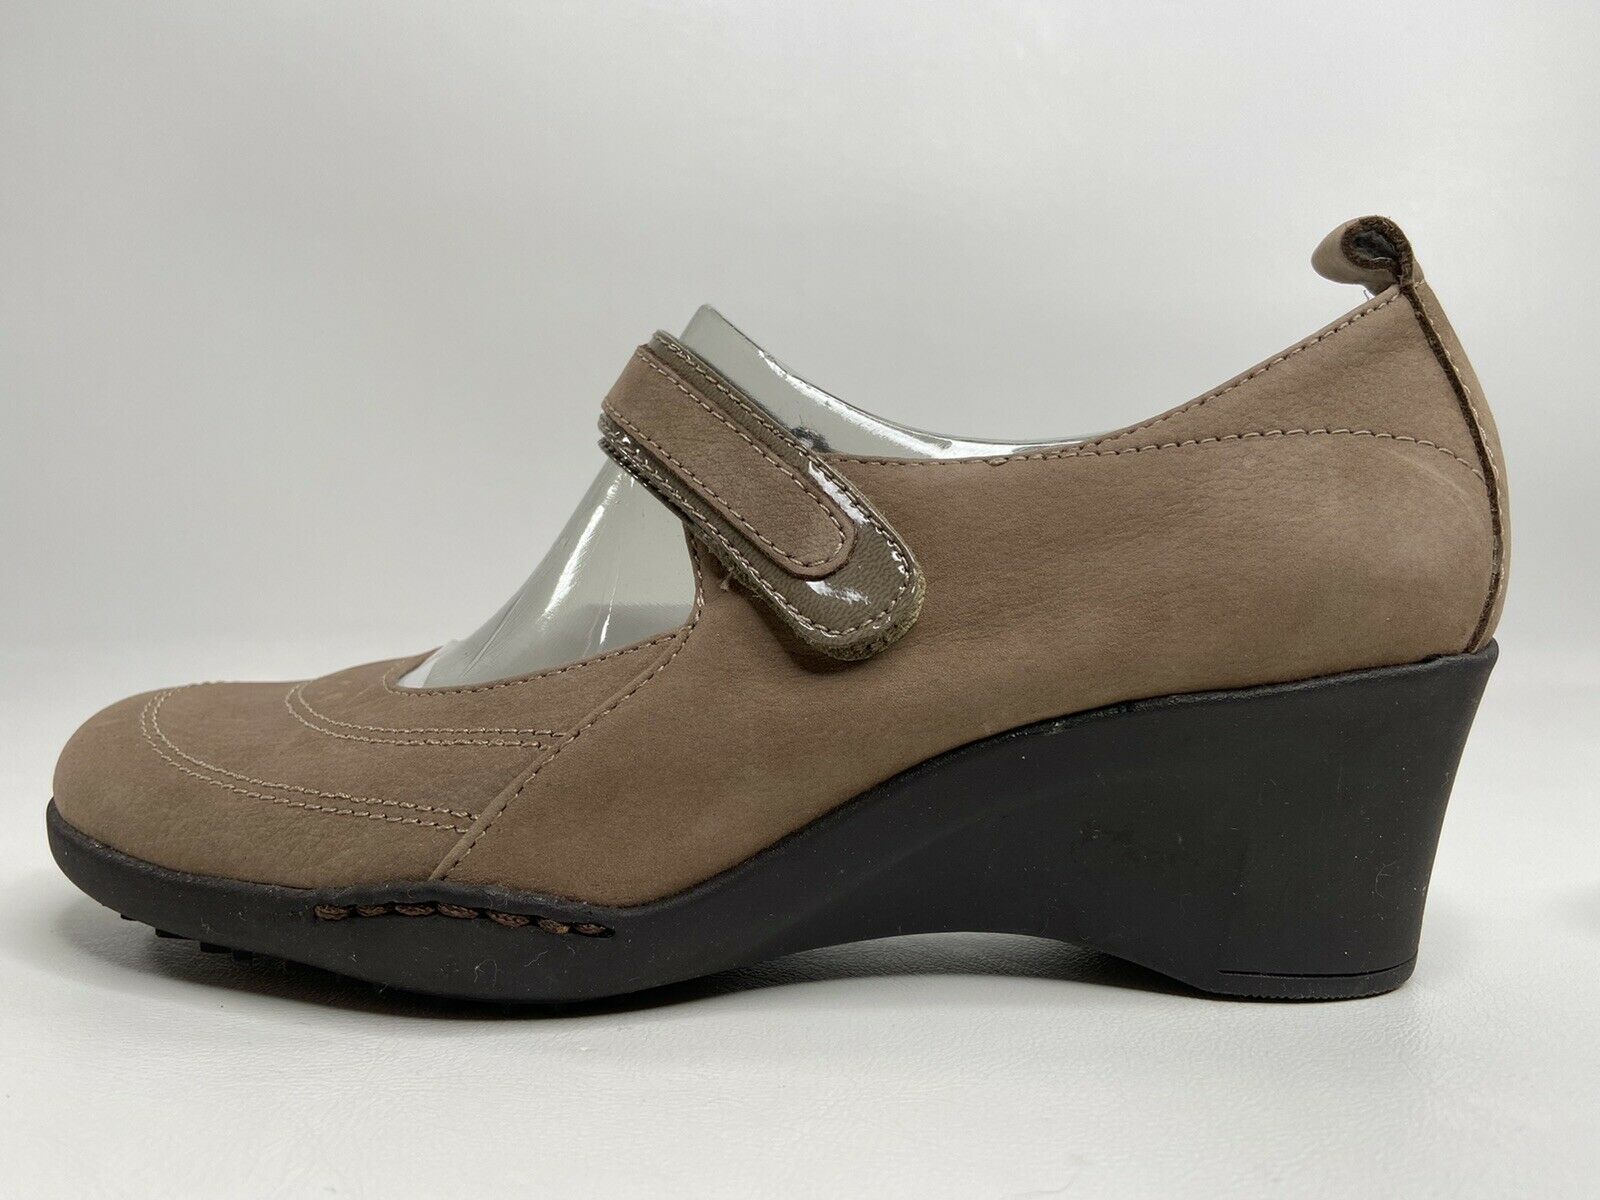 Aerosoles Tornado Shoes Tan/Brown Suede Wedge Heel Mary Jane Casual Women 5.5